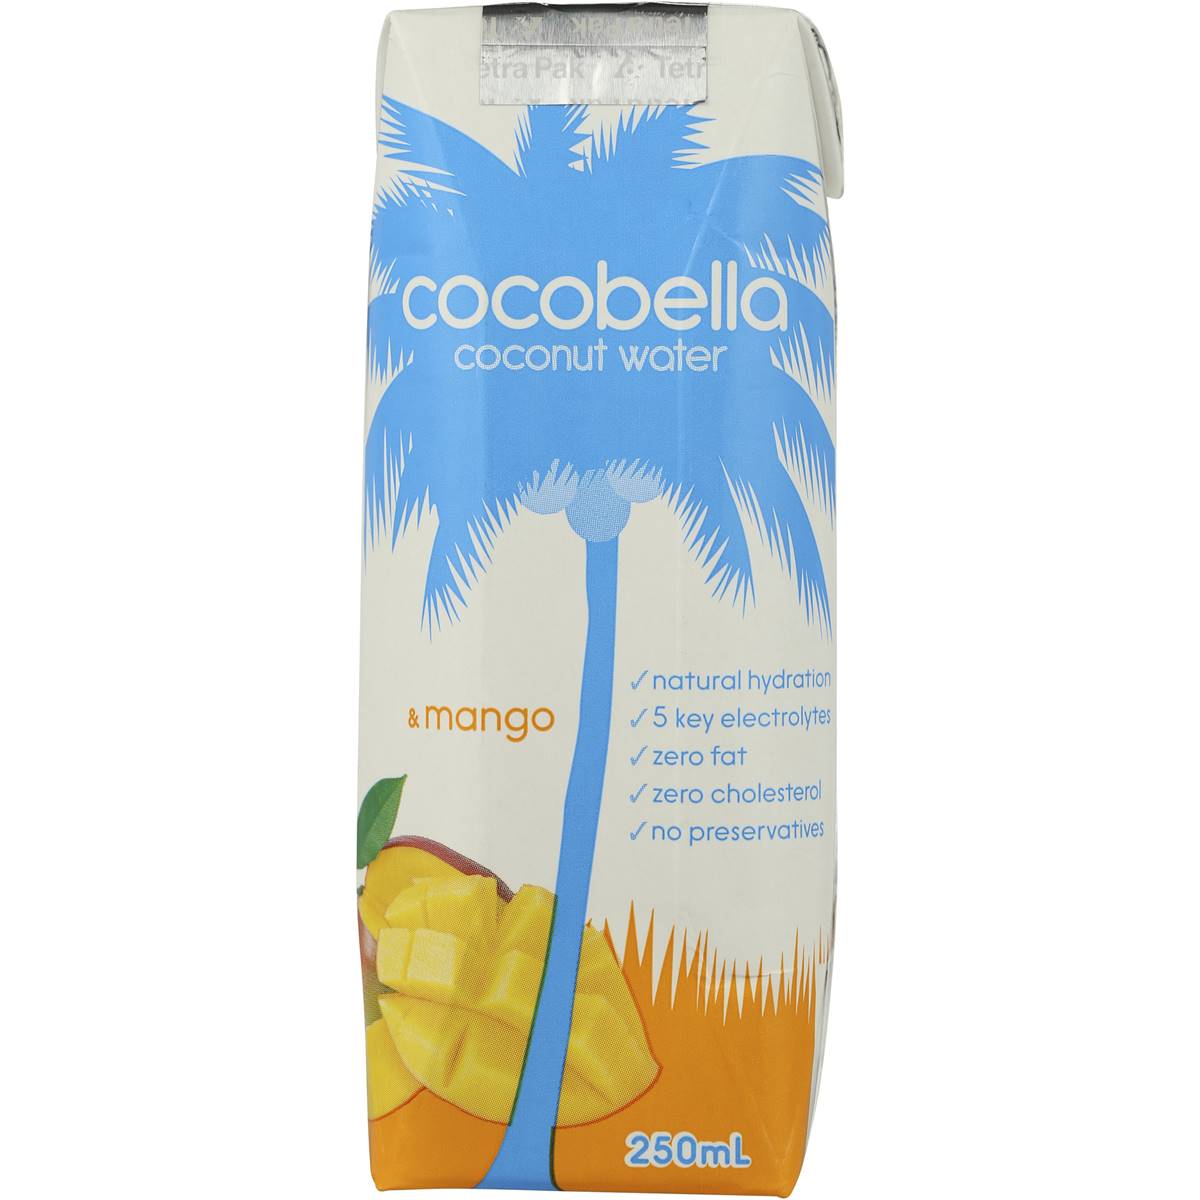 Cocobella Cocobella Coconut Water & Mango